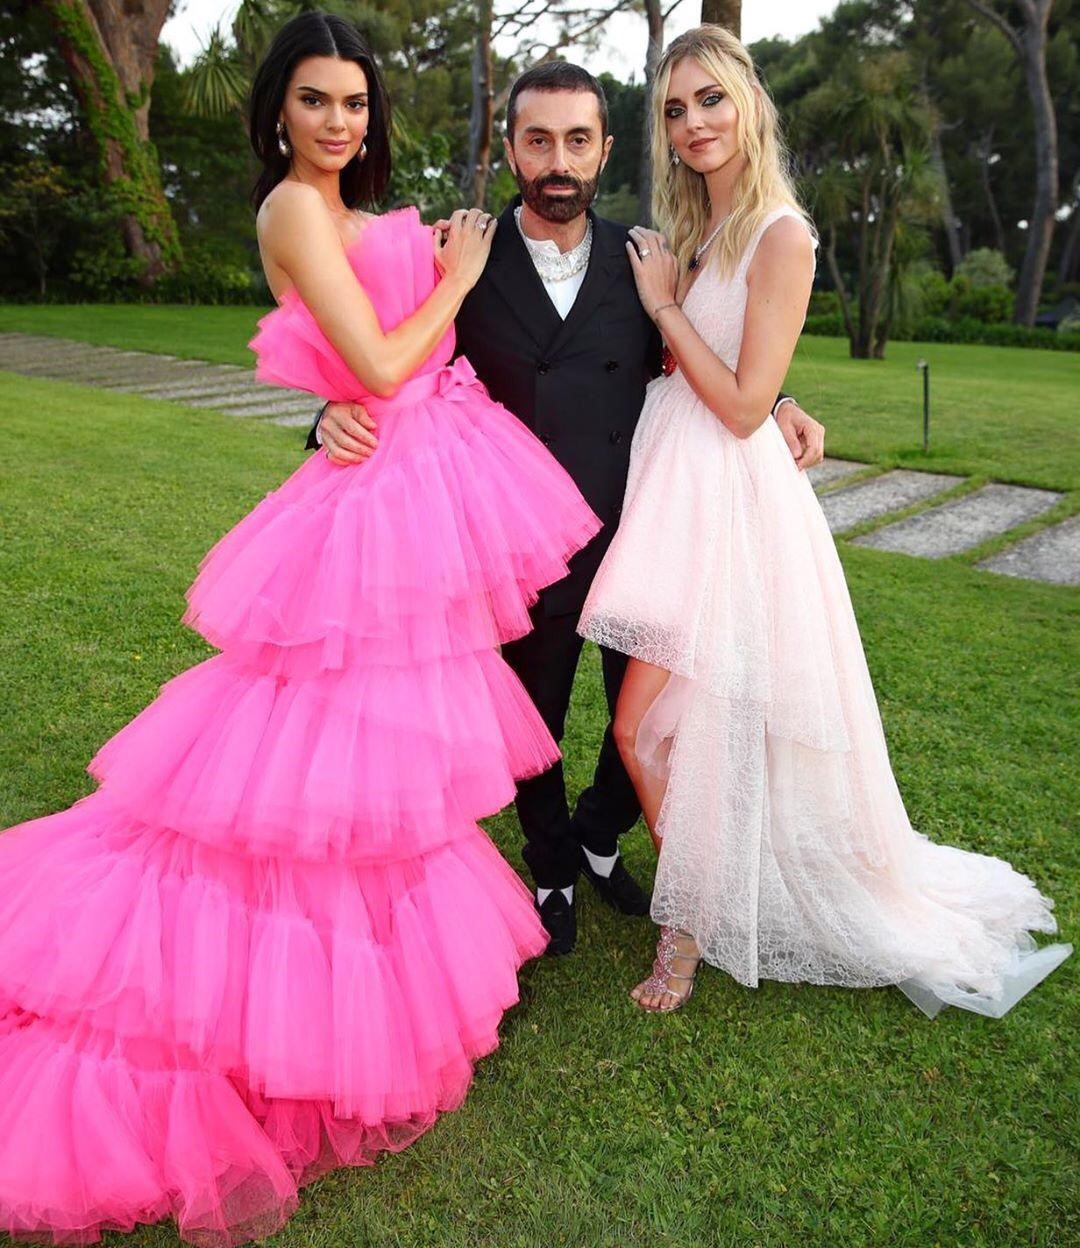 קיארה פראני, ג'יאמבטיסטה ואלי וקנדל ג'נר לובשות שמלות מהקולקציה של ג'יאמבטיסטה ואלי ל-H&amp;M | צילום:הנס מוריץ